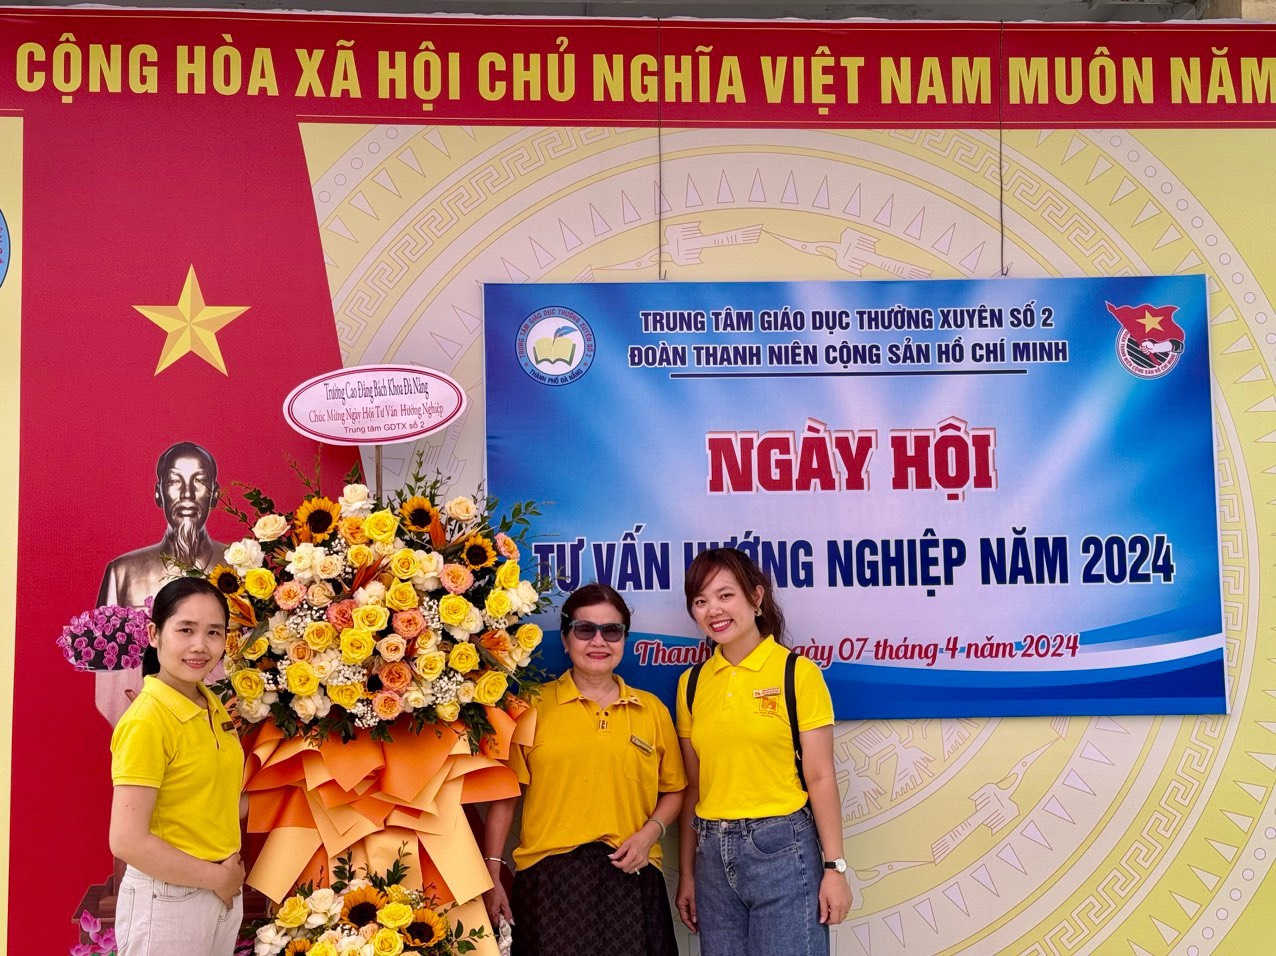 Tham gia tư vấn, hướng nghiệp tại Trung tâm giáo dục thường xuyên số 2 thành phố Đà Nẵng